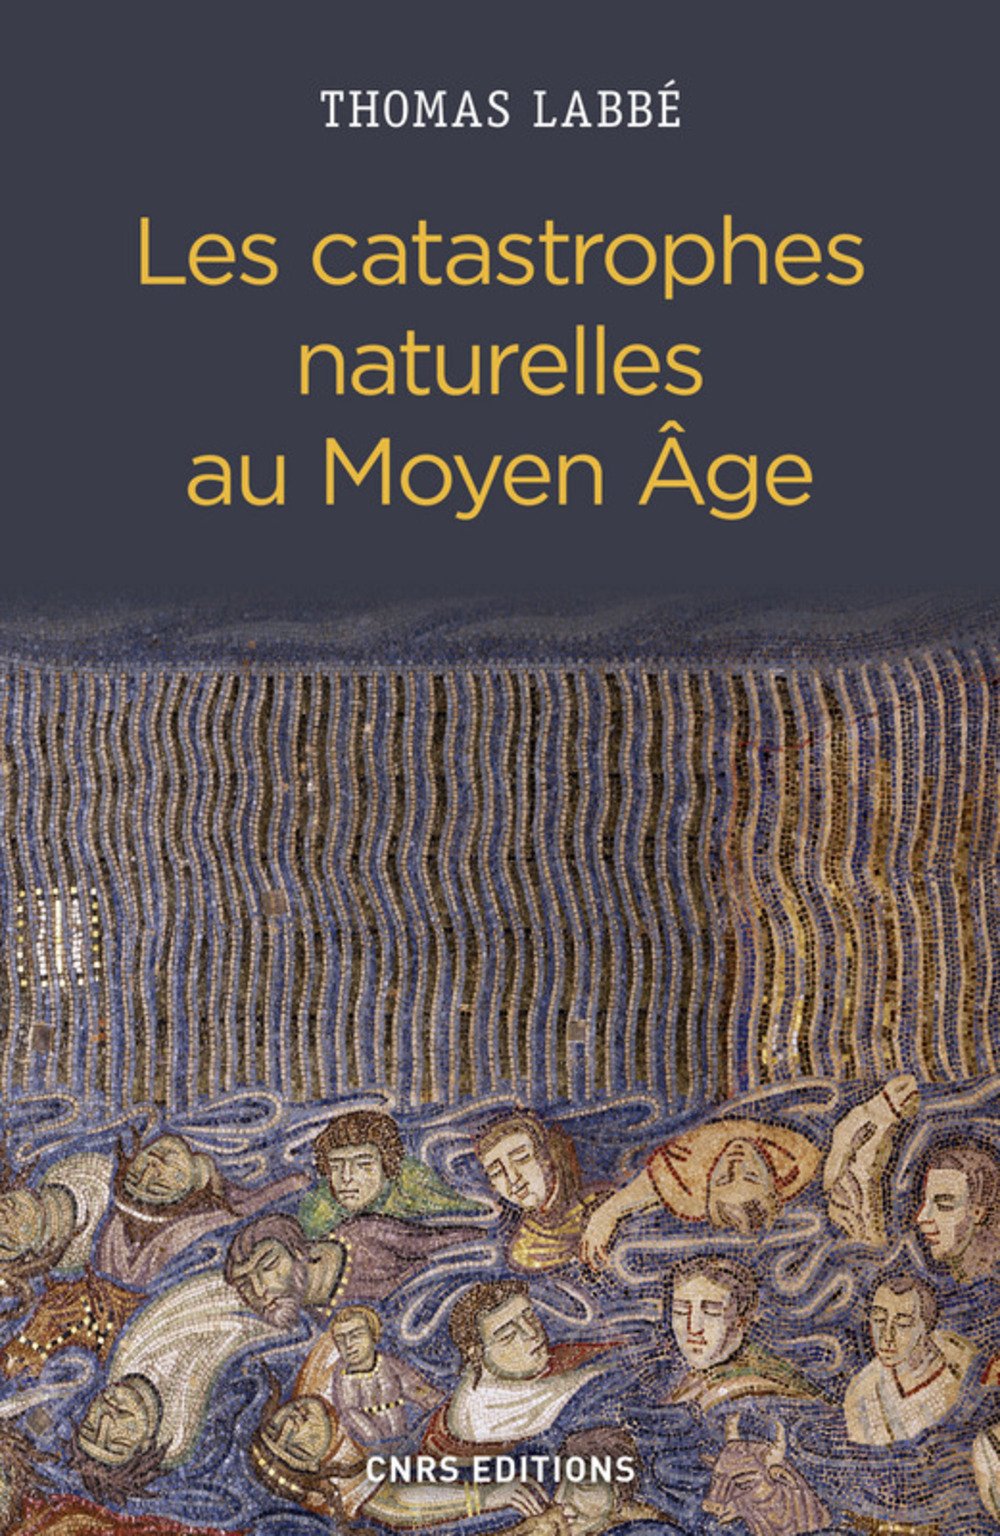 ÉPUISÉ - Voir édition Poche, référence 55917 - Les catastrophes naturelles au Moyen Age, 2017, 300 p.